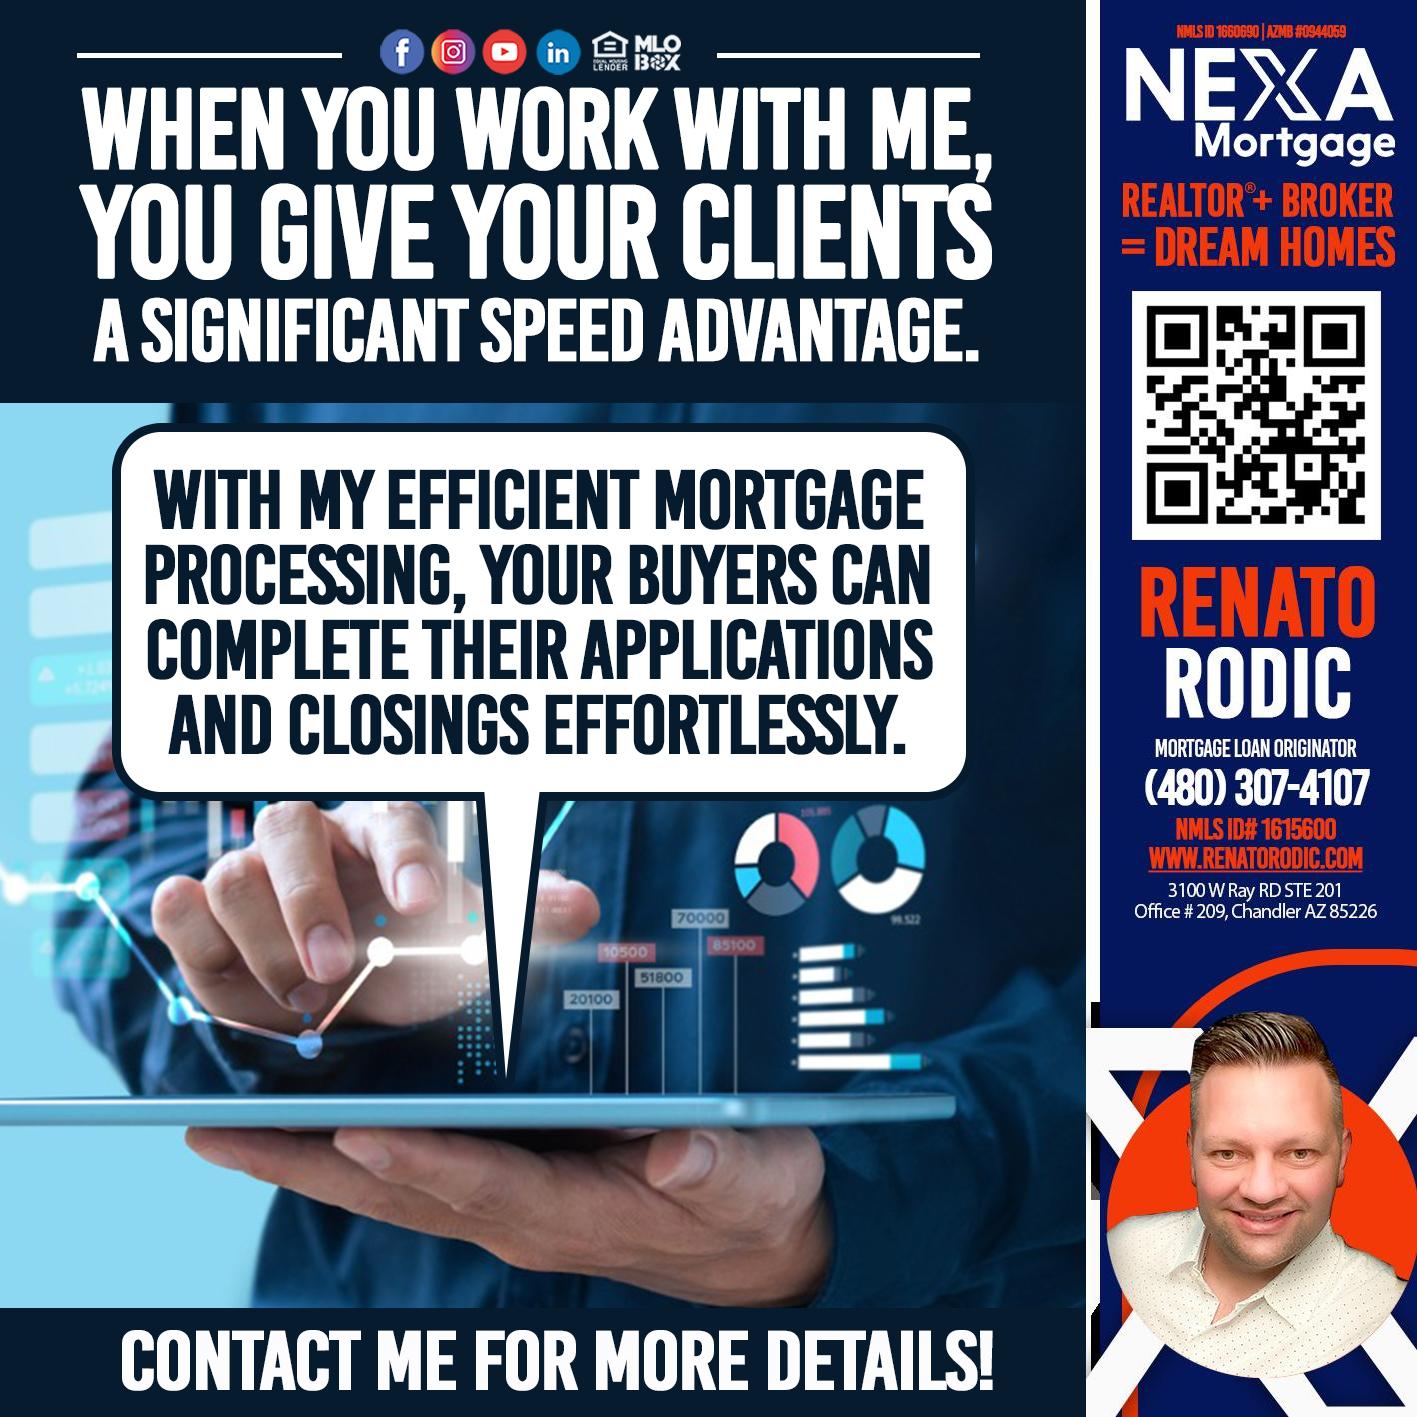 WHEN YOU WORK WITH ME - Renato Rodic -Mortgage Loan Originator